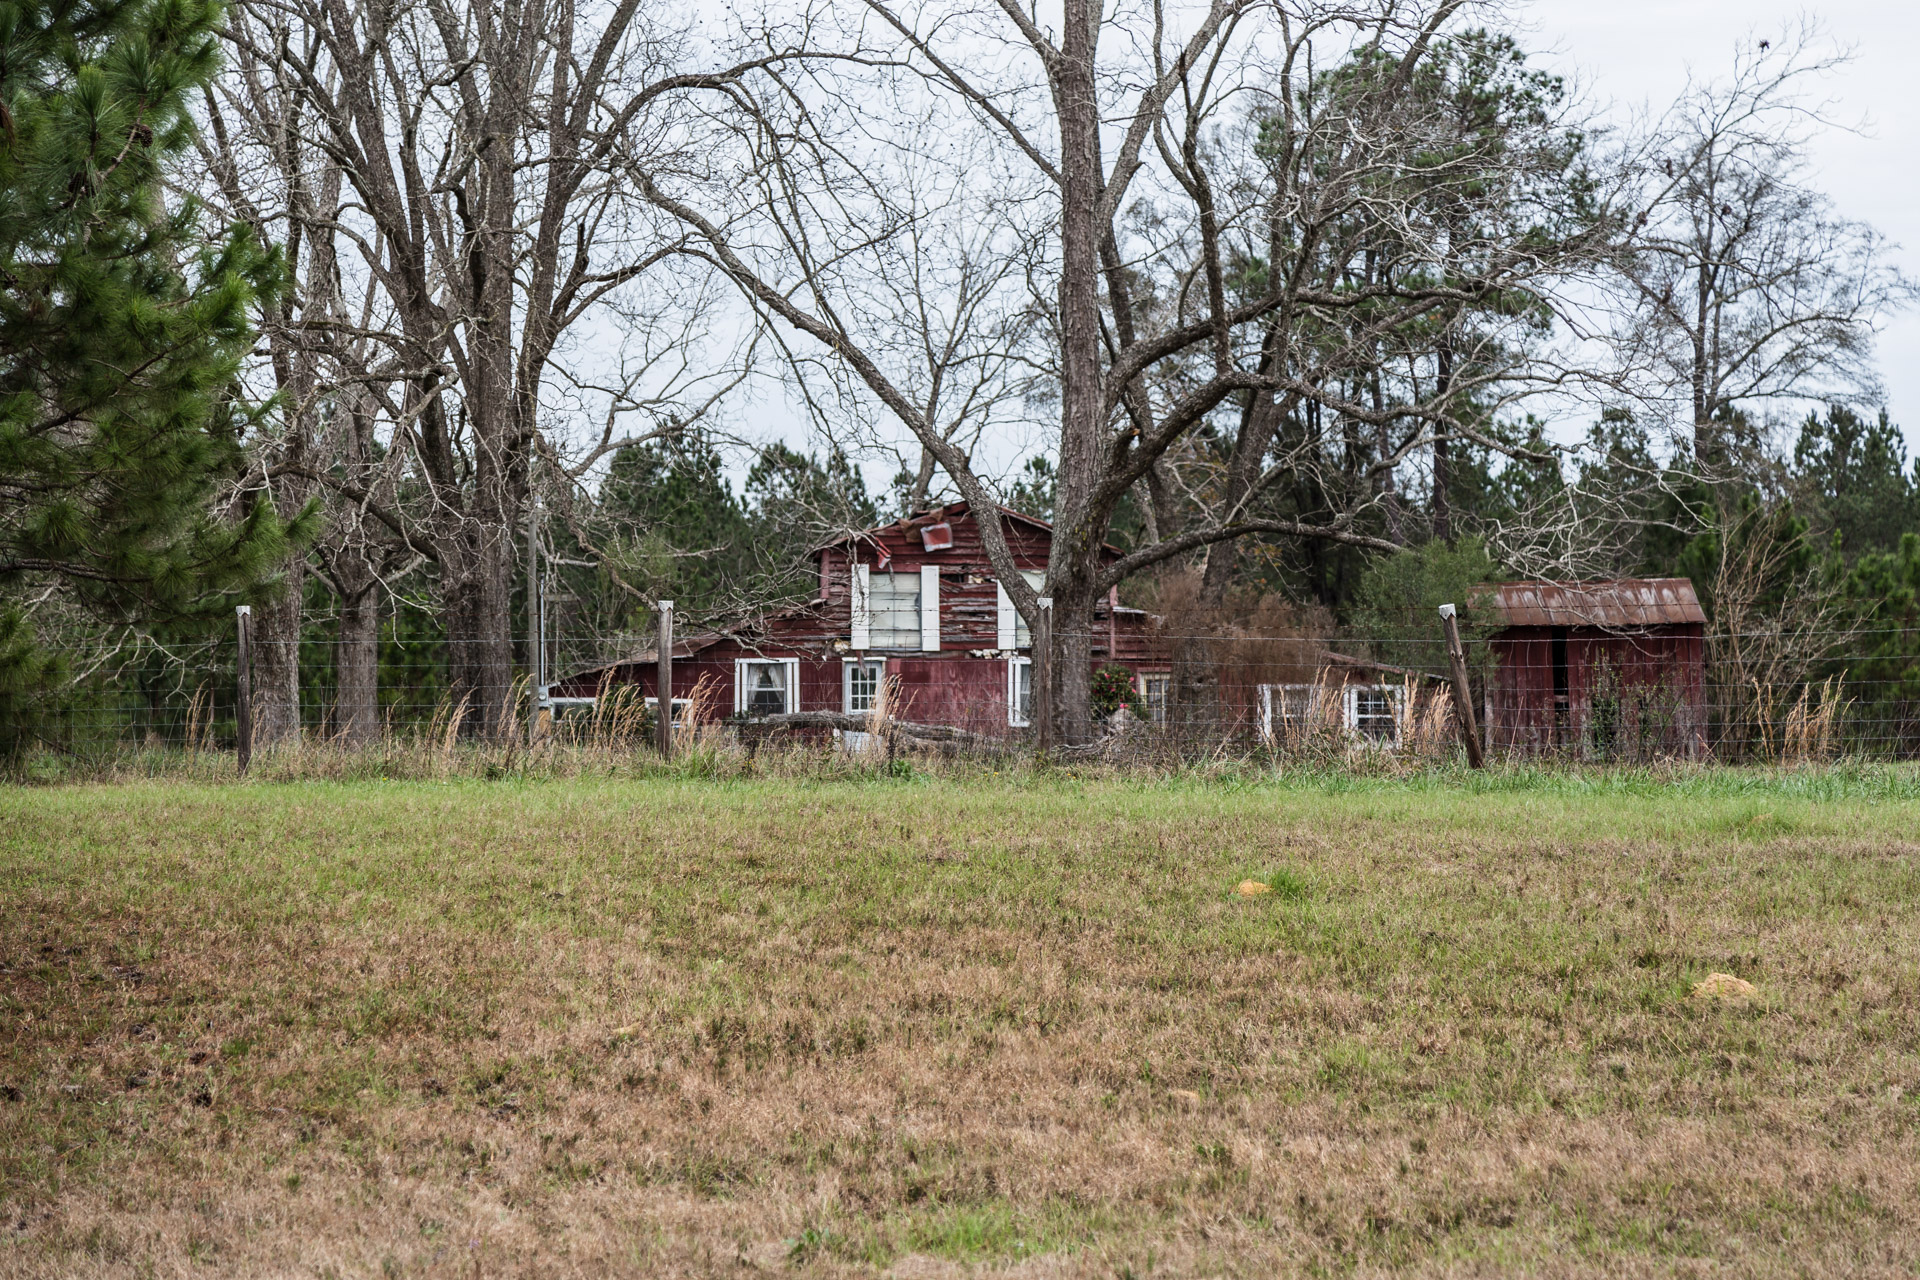 Statesboro, Georgia - Decaying Barn House